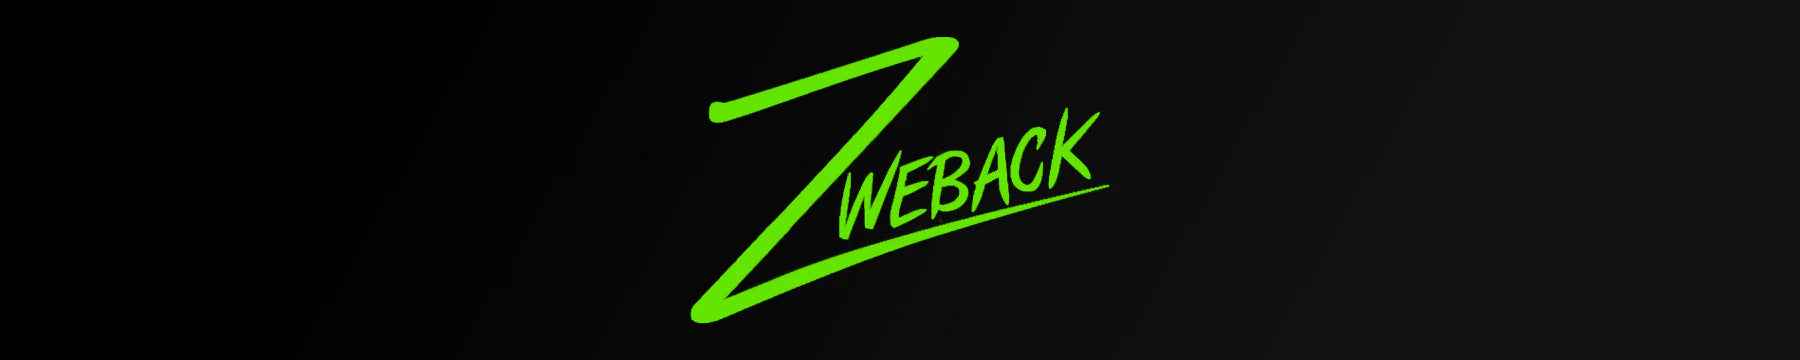 Zweback